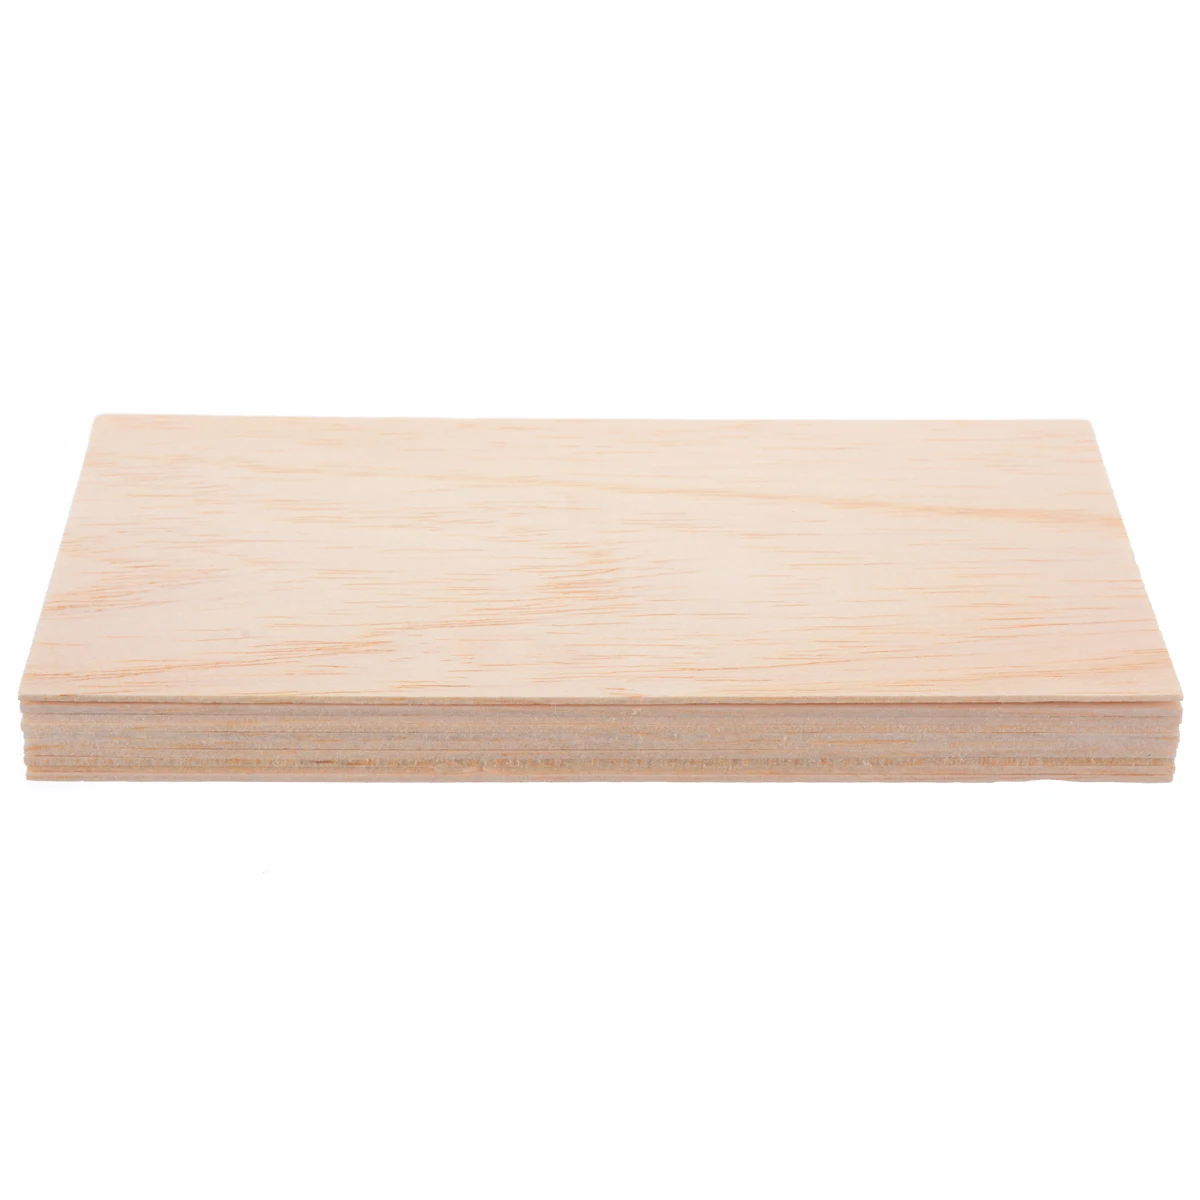 10 шт./компл. 200*100*1,5 мм пробкового дерева простыни деревянная тарелка набор «сделай сам» для дома корабль самолет модель лодки игрушки корабль